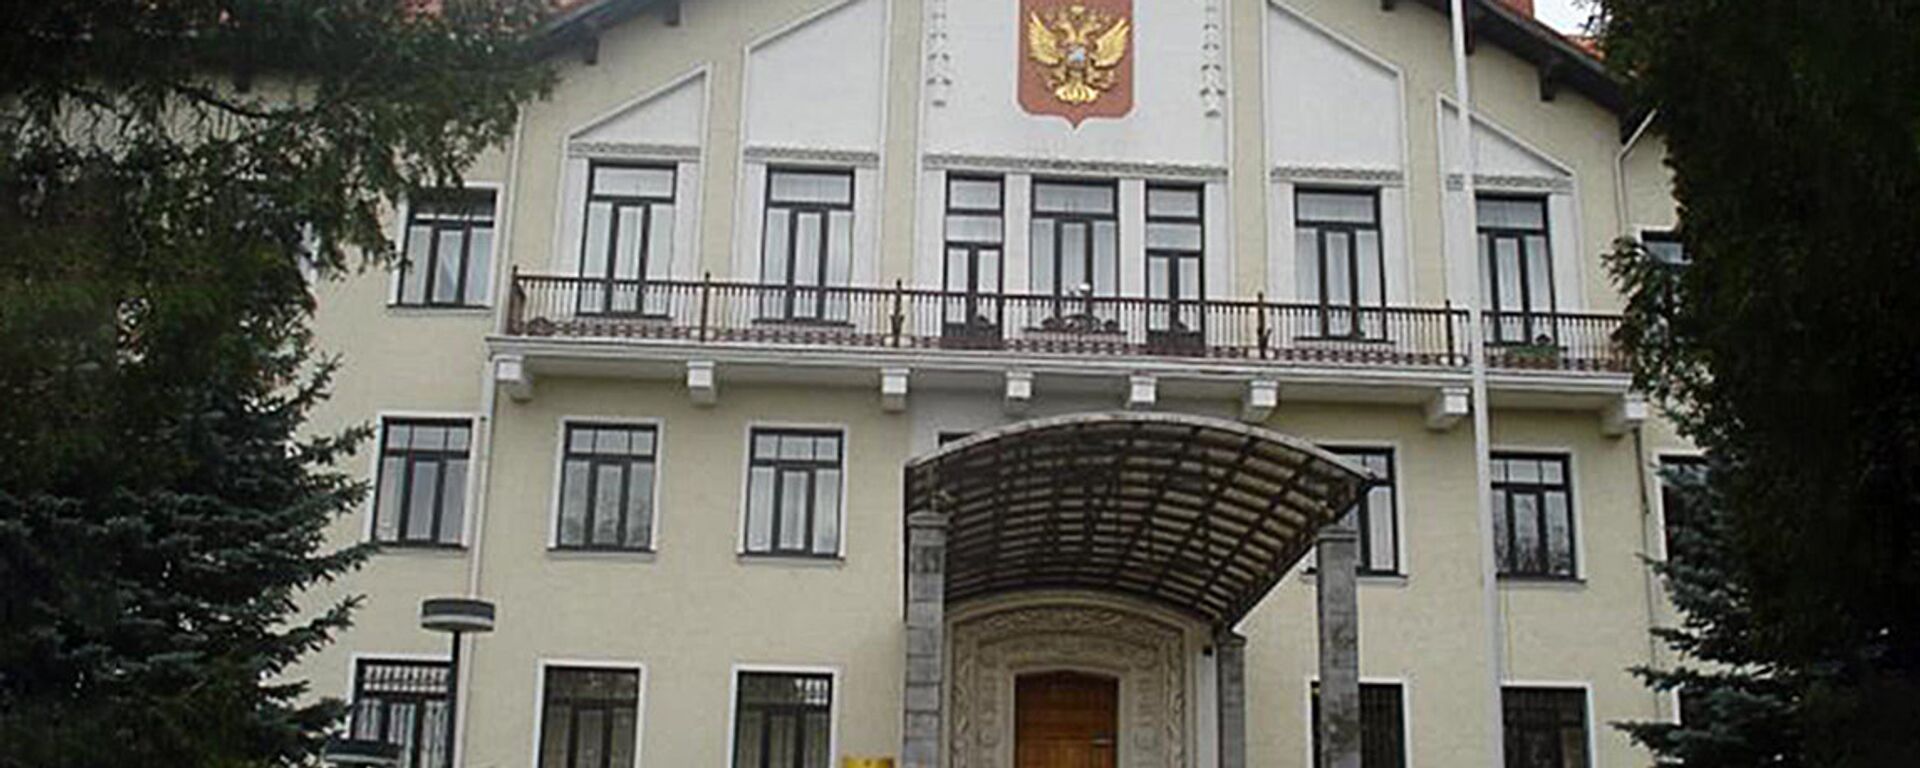 Krievijas vēstniecības ēka Lietuvā - Sputnik Latvija, 1920, 17.07.2021